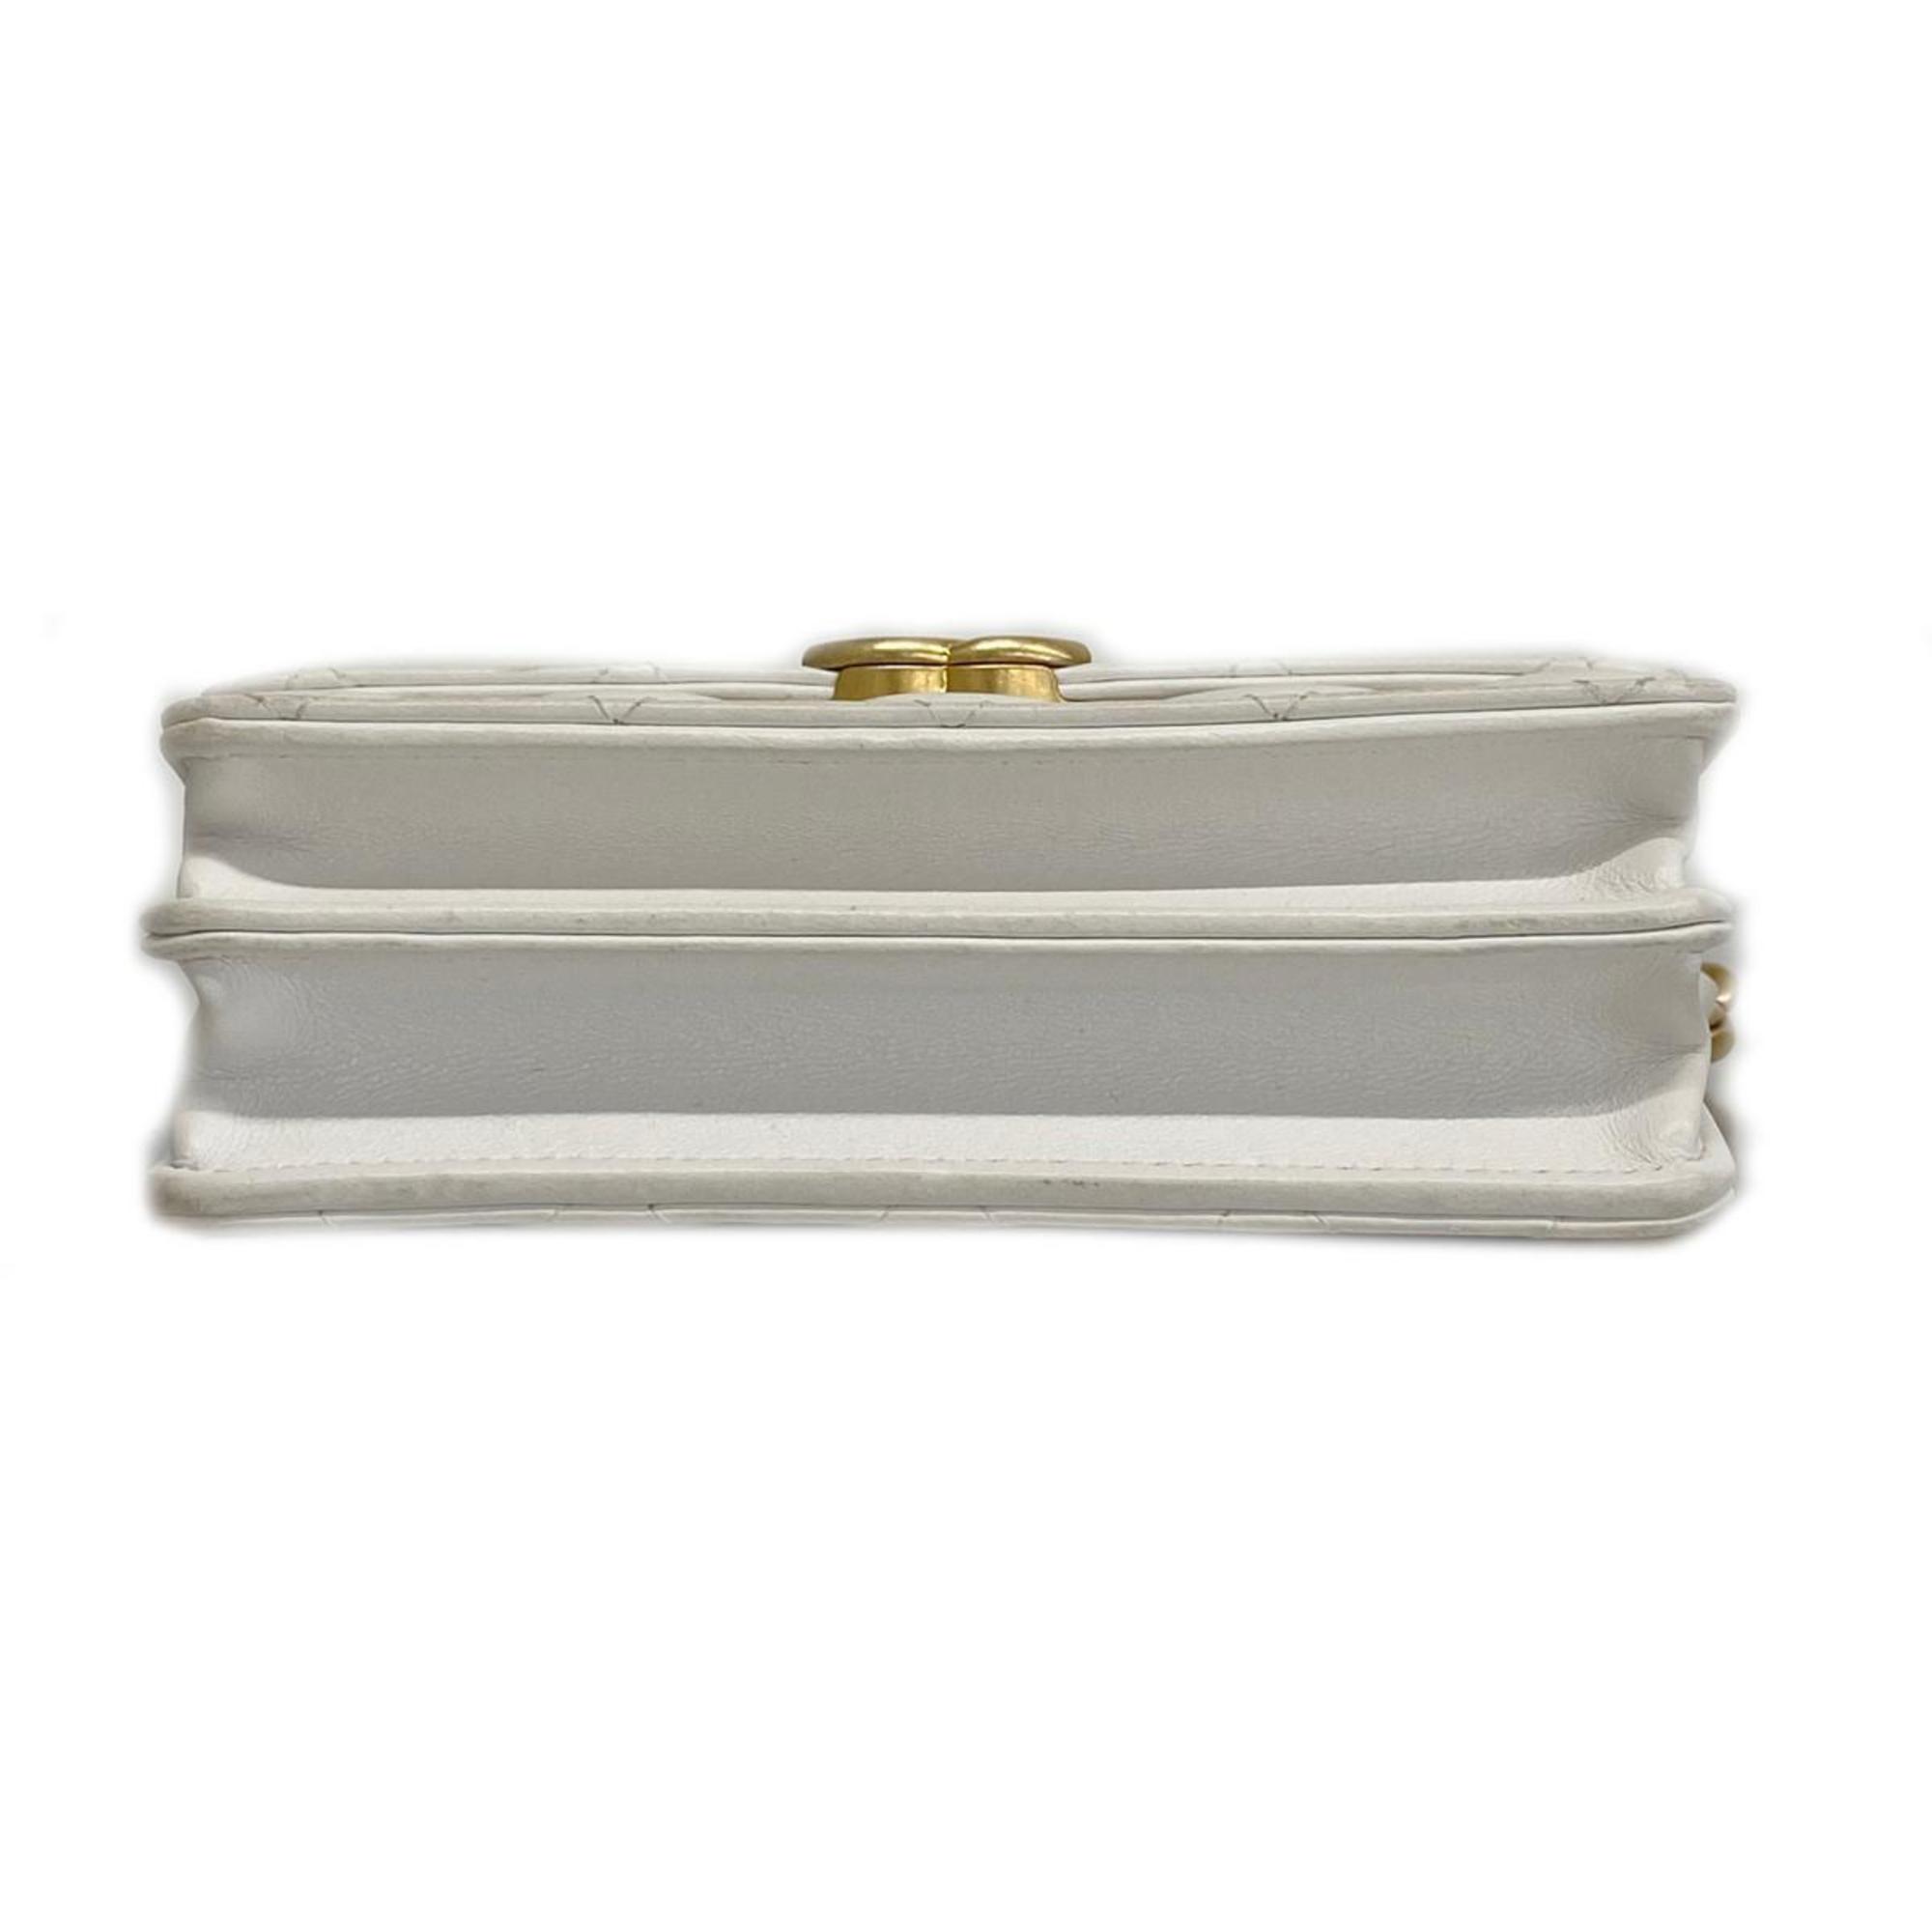 Chanel Shoulder Wallet Matelasse Chain Lambskin White Women's